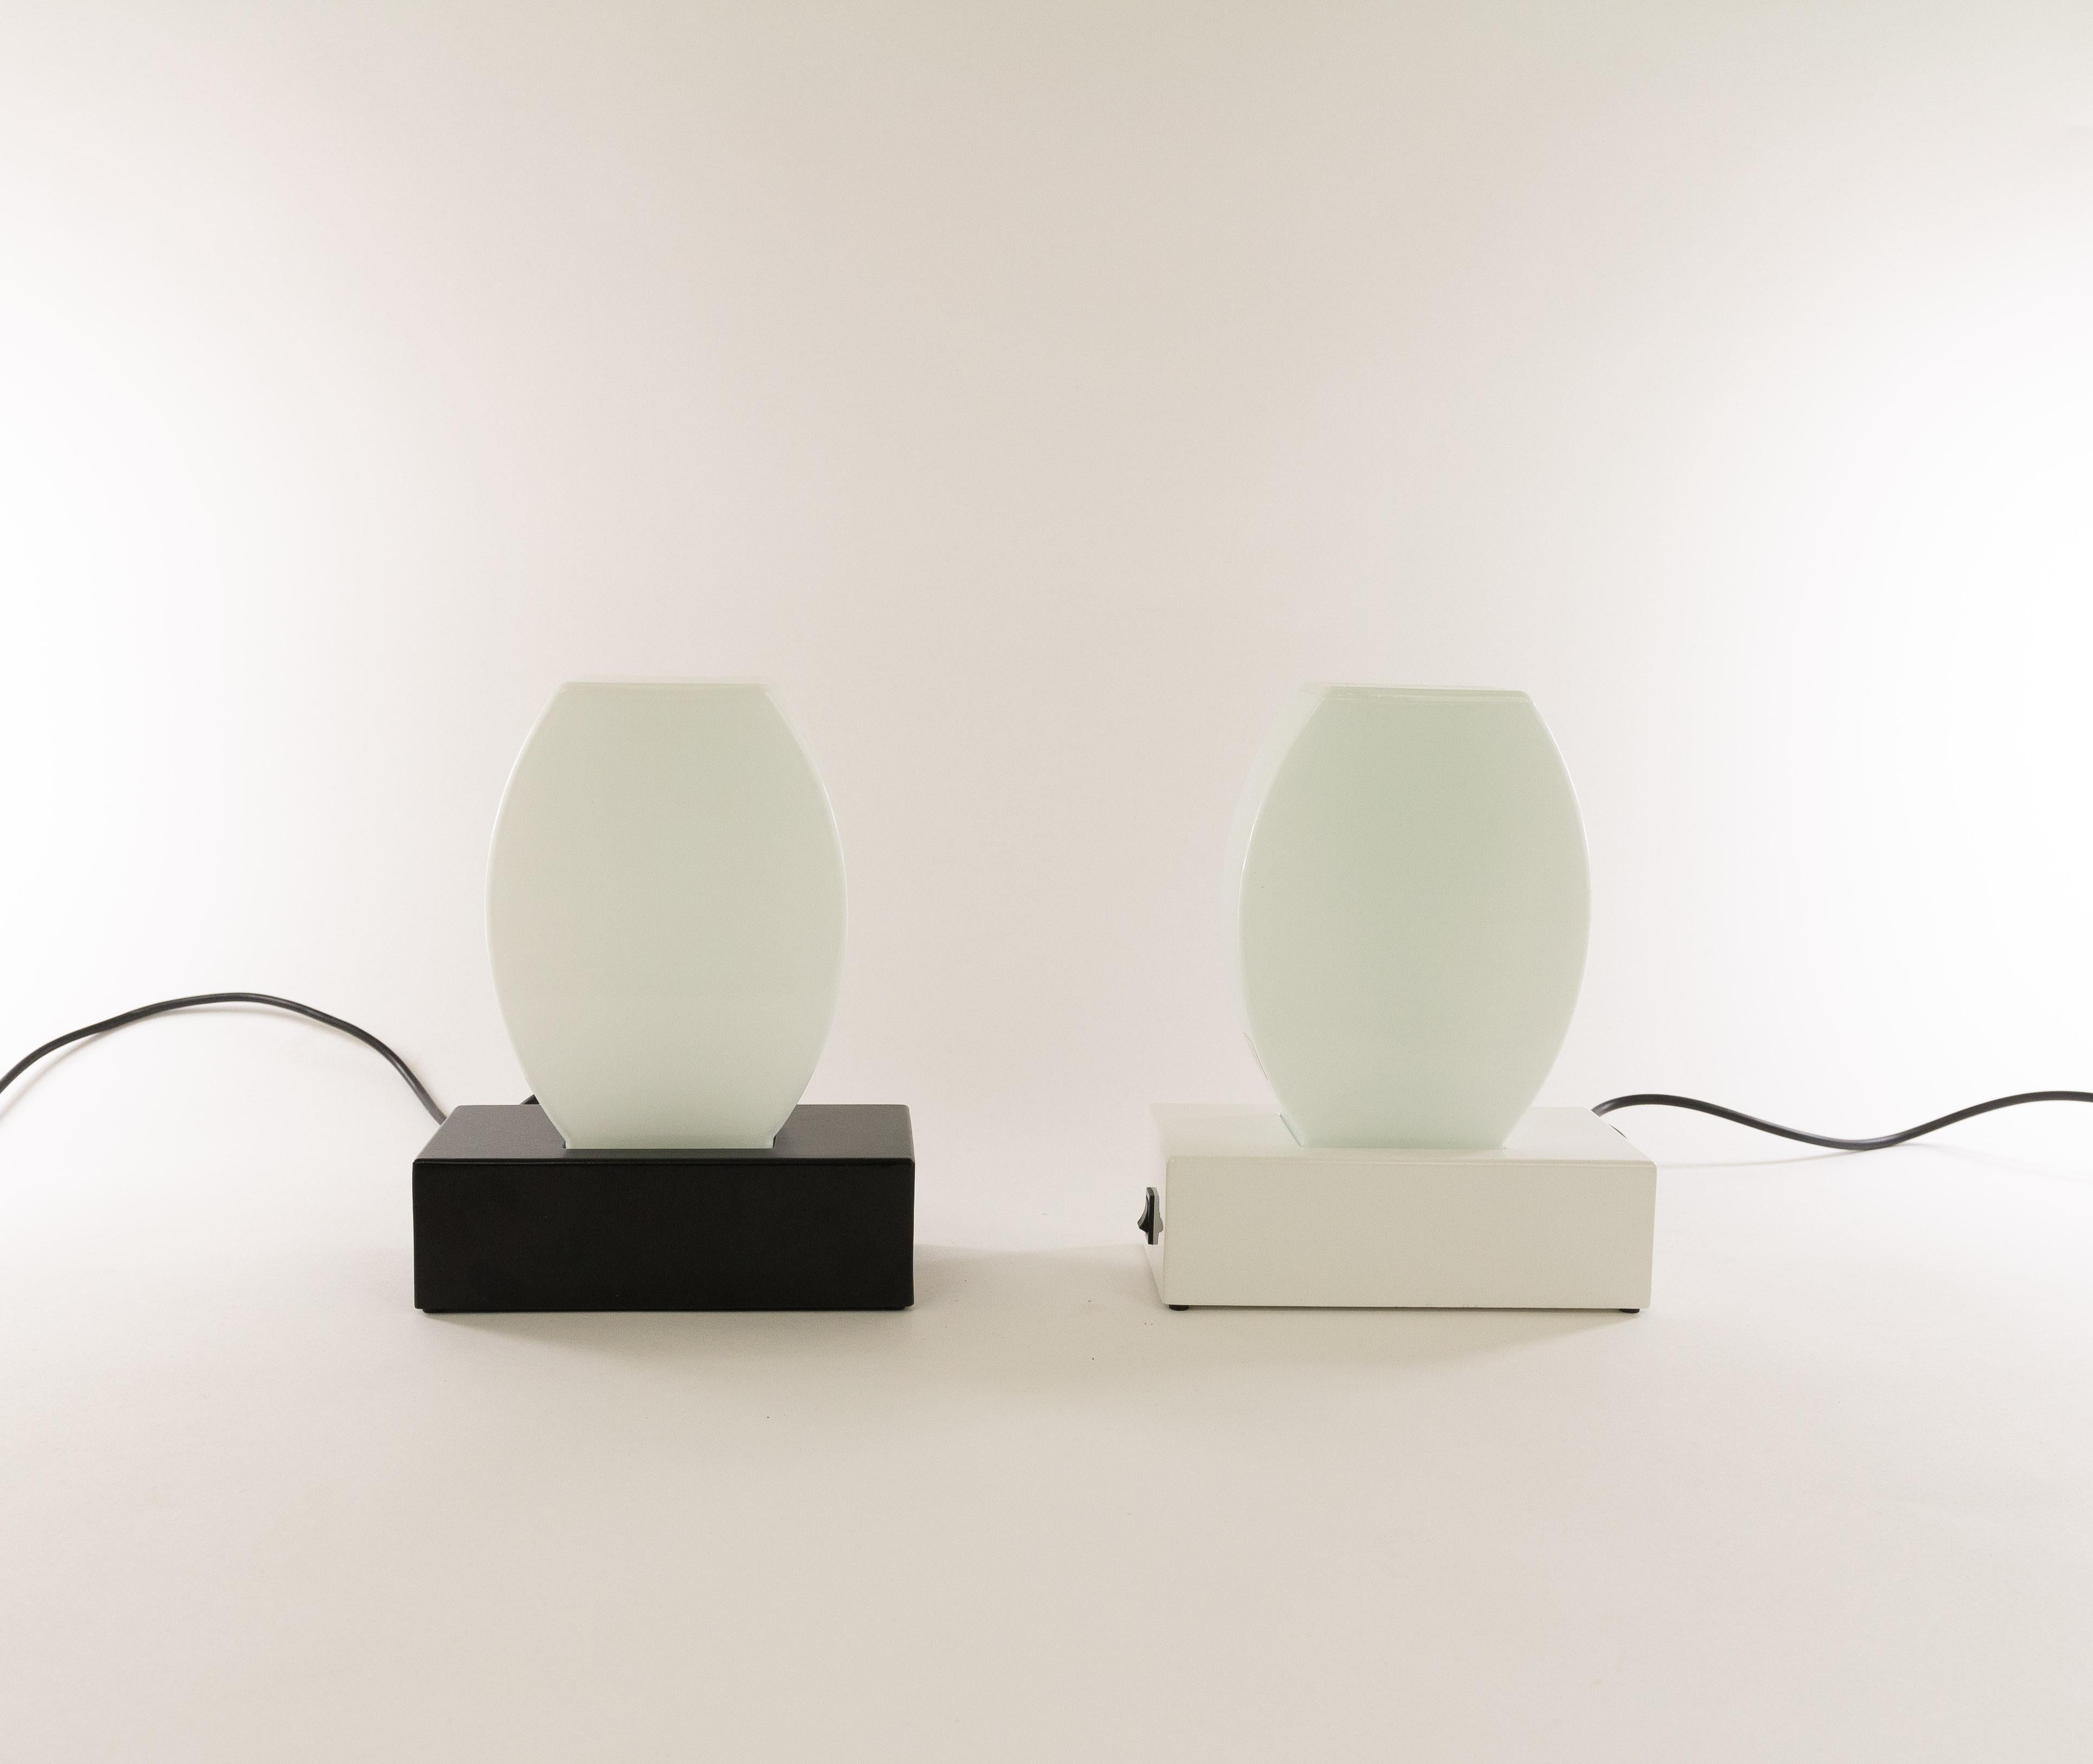 Paire de lampes de table Dorane conçues en 1977 par Ettore Sottsass et fabriquées par Stilnovo, Milan.

La base de ces lampes est en métal laqué (une en blanc et l'autre en noir). L'abat-jour est en verre de Murano. Il a l'étiquette